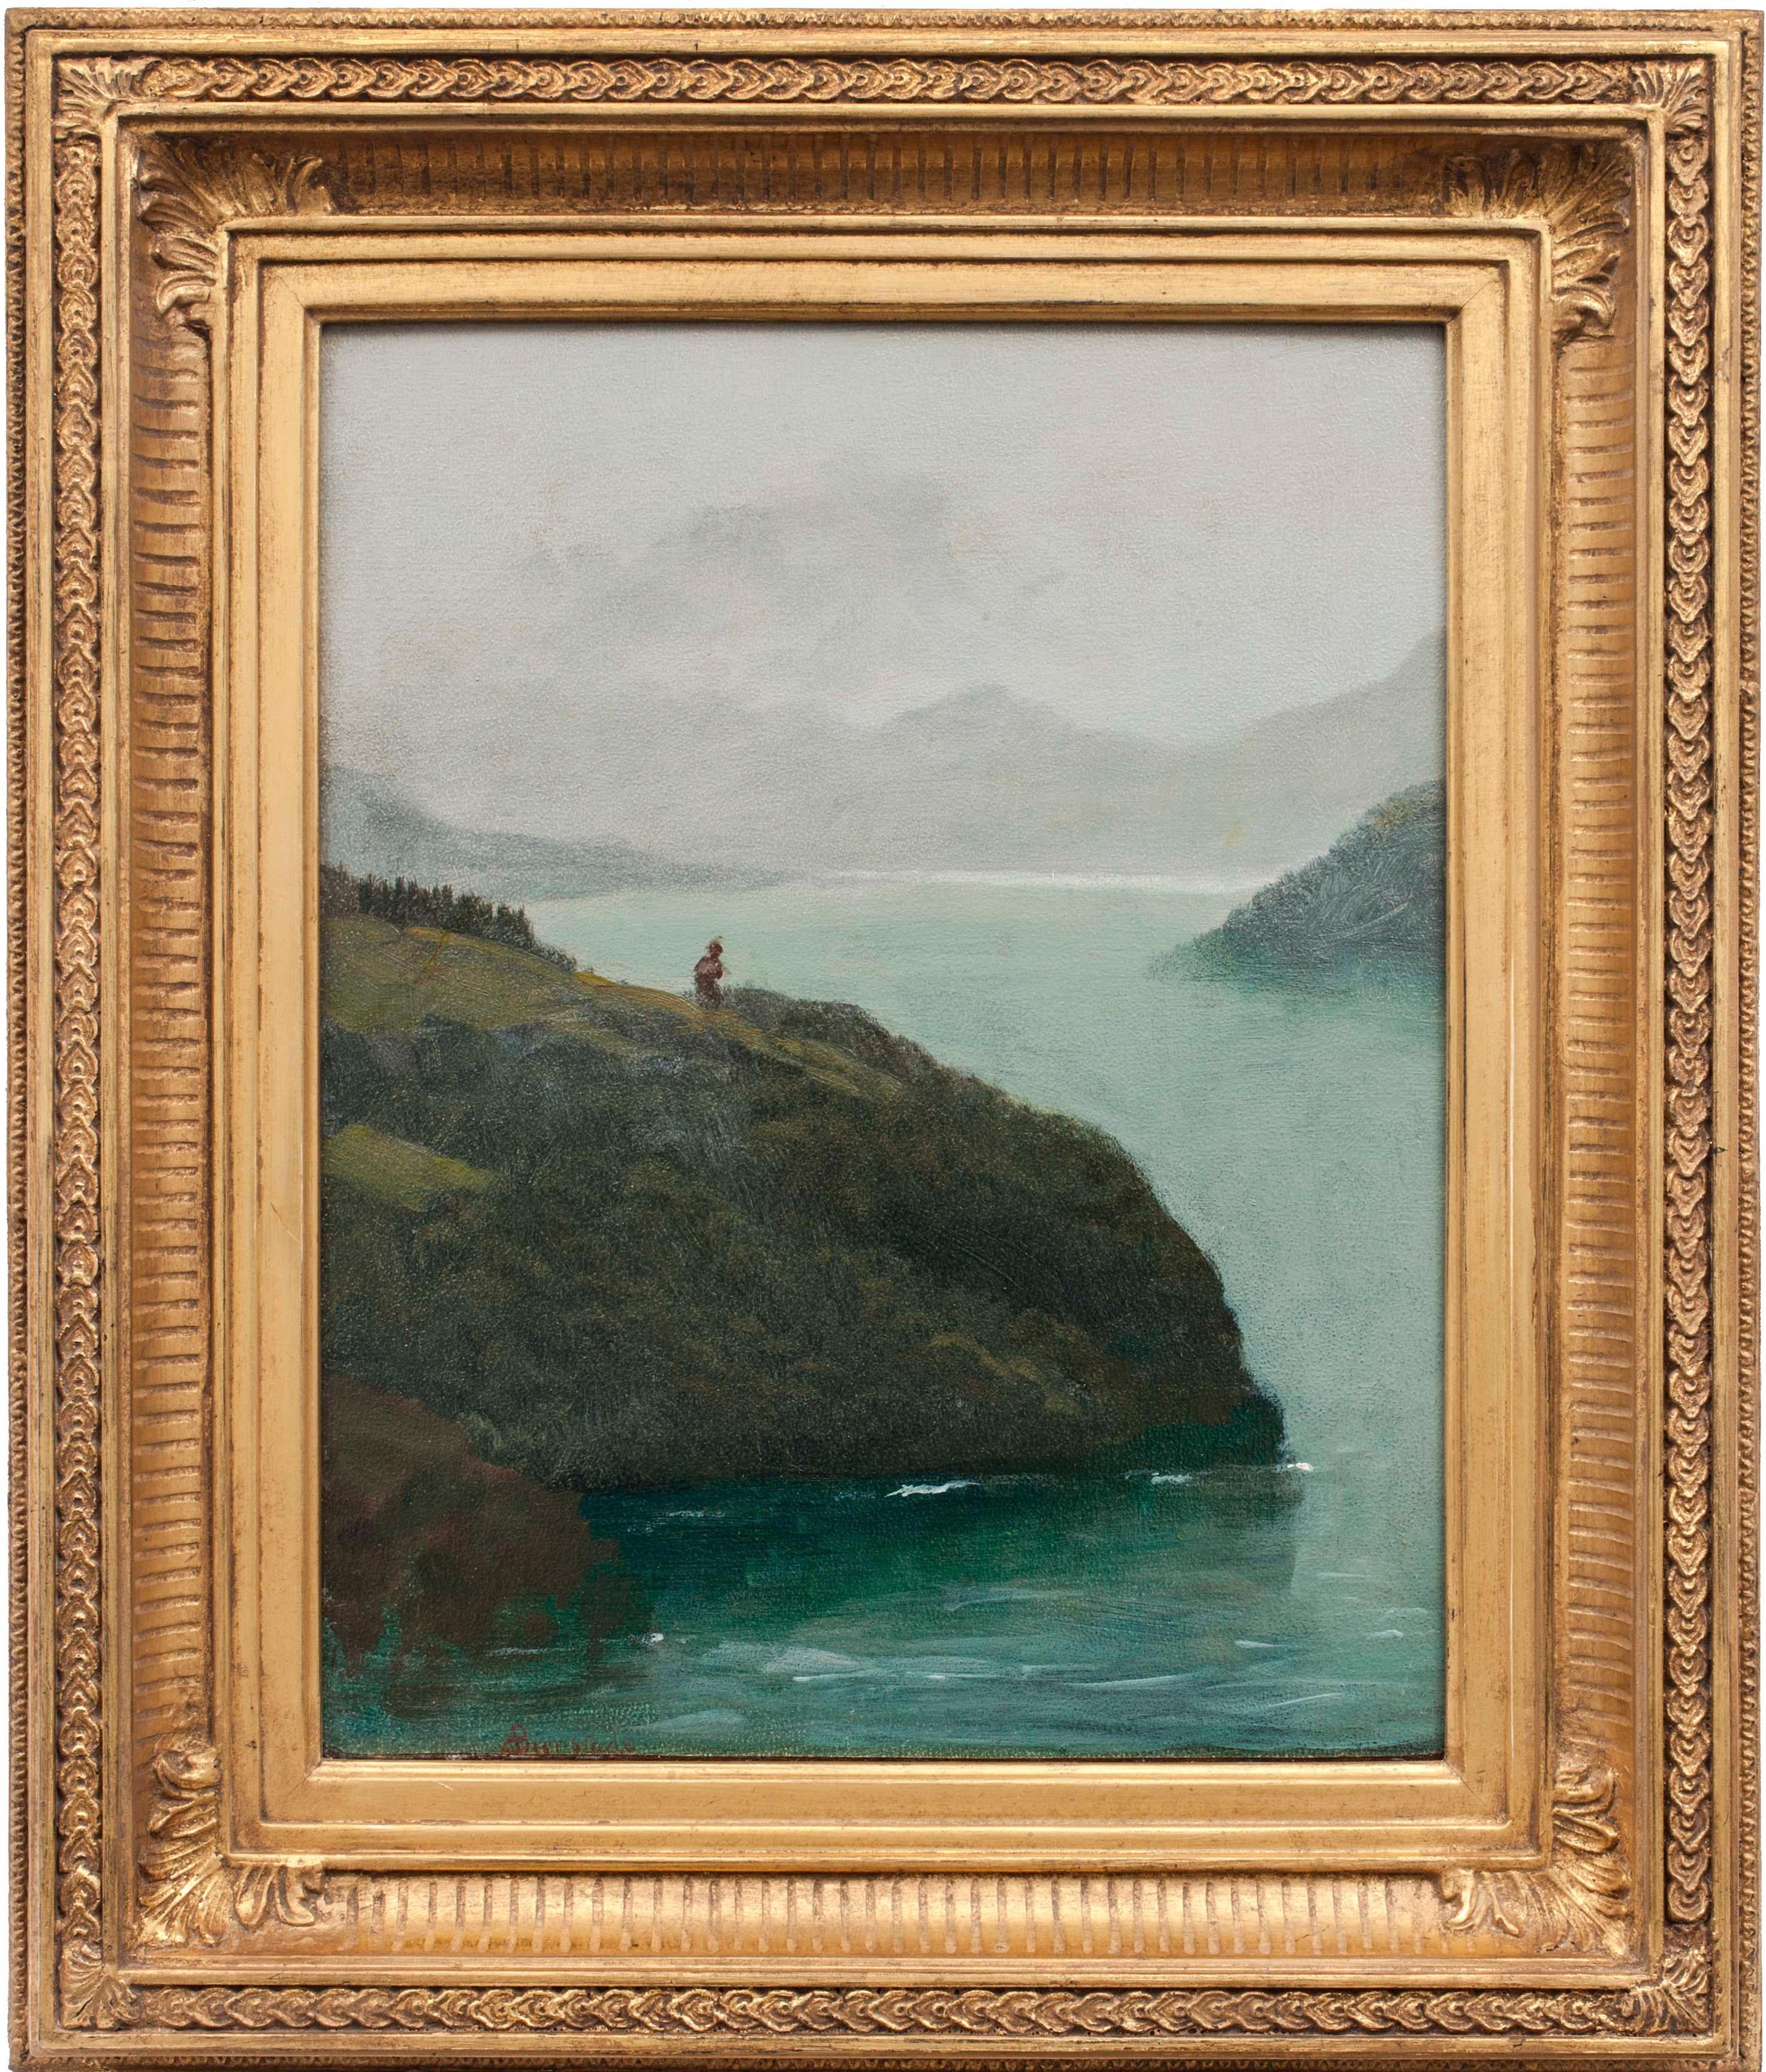 Western Scenery, 19th-century landscape by Albert Bierstadt (1830-1902, American) For Sale 1